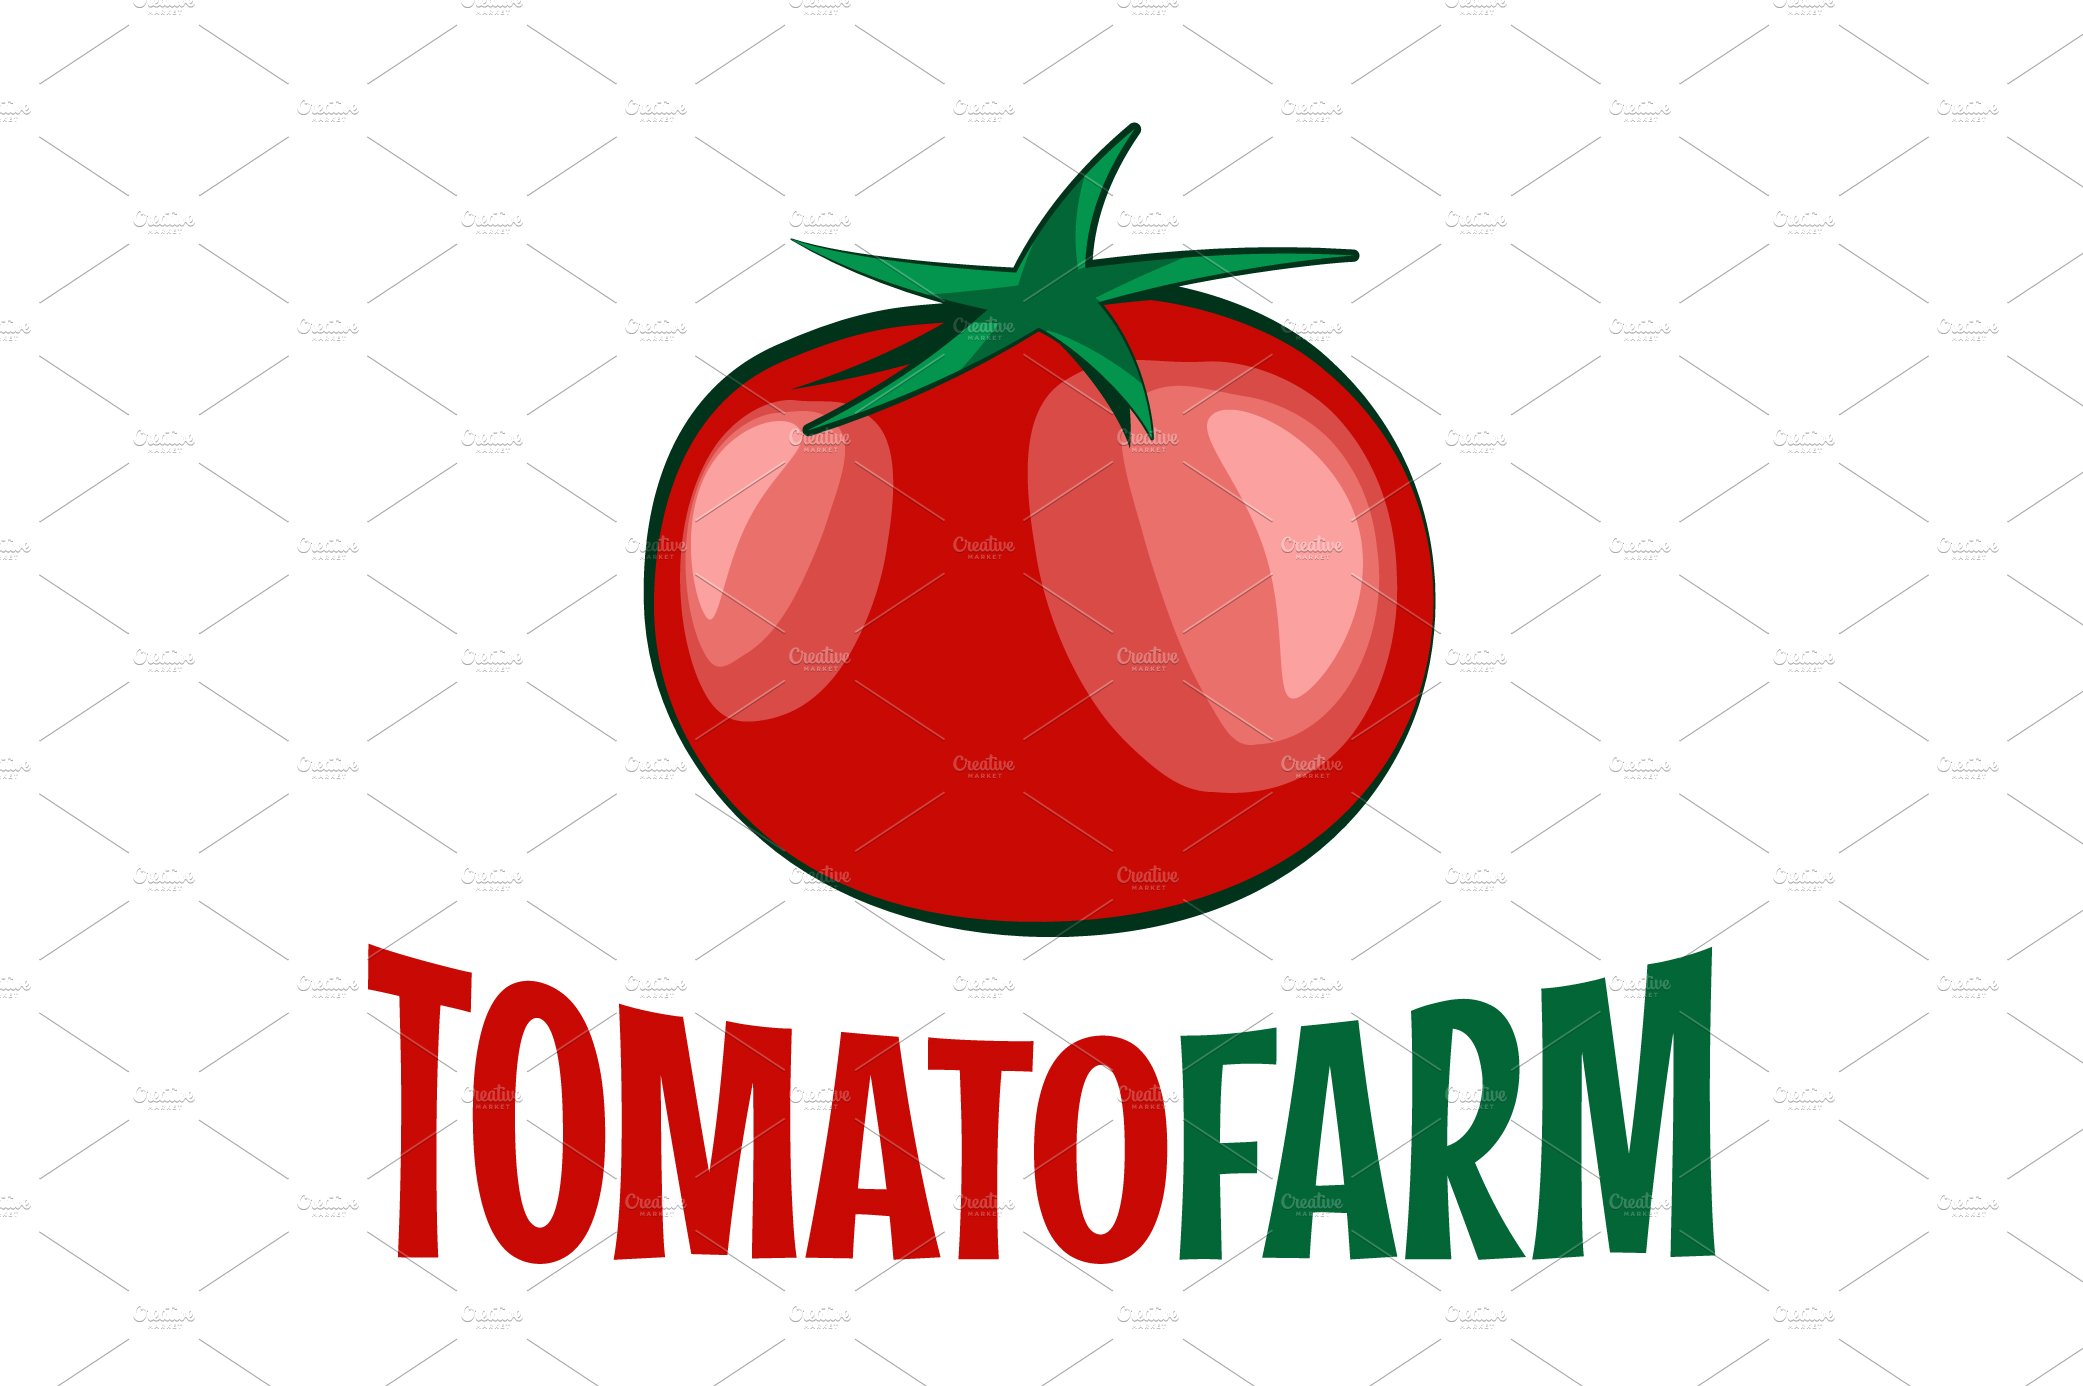 Tomato logo on white background. cover image.